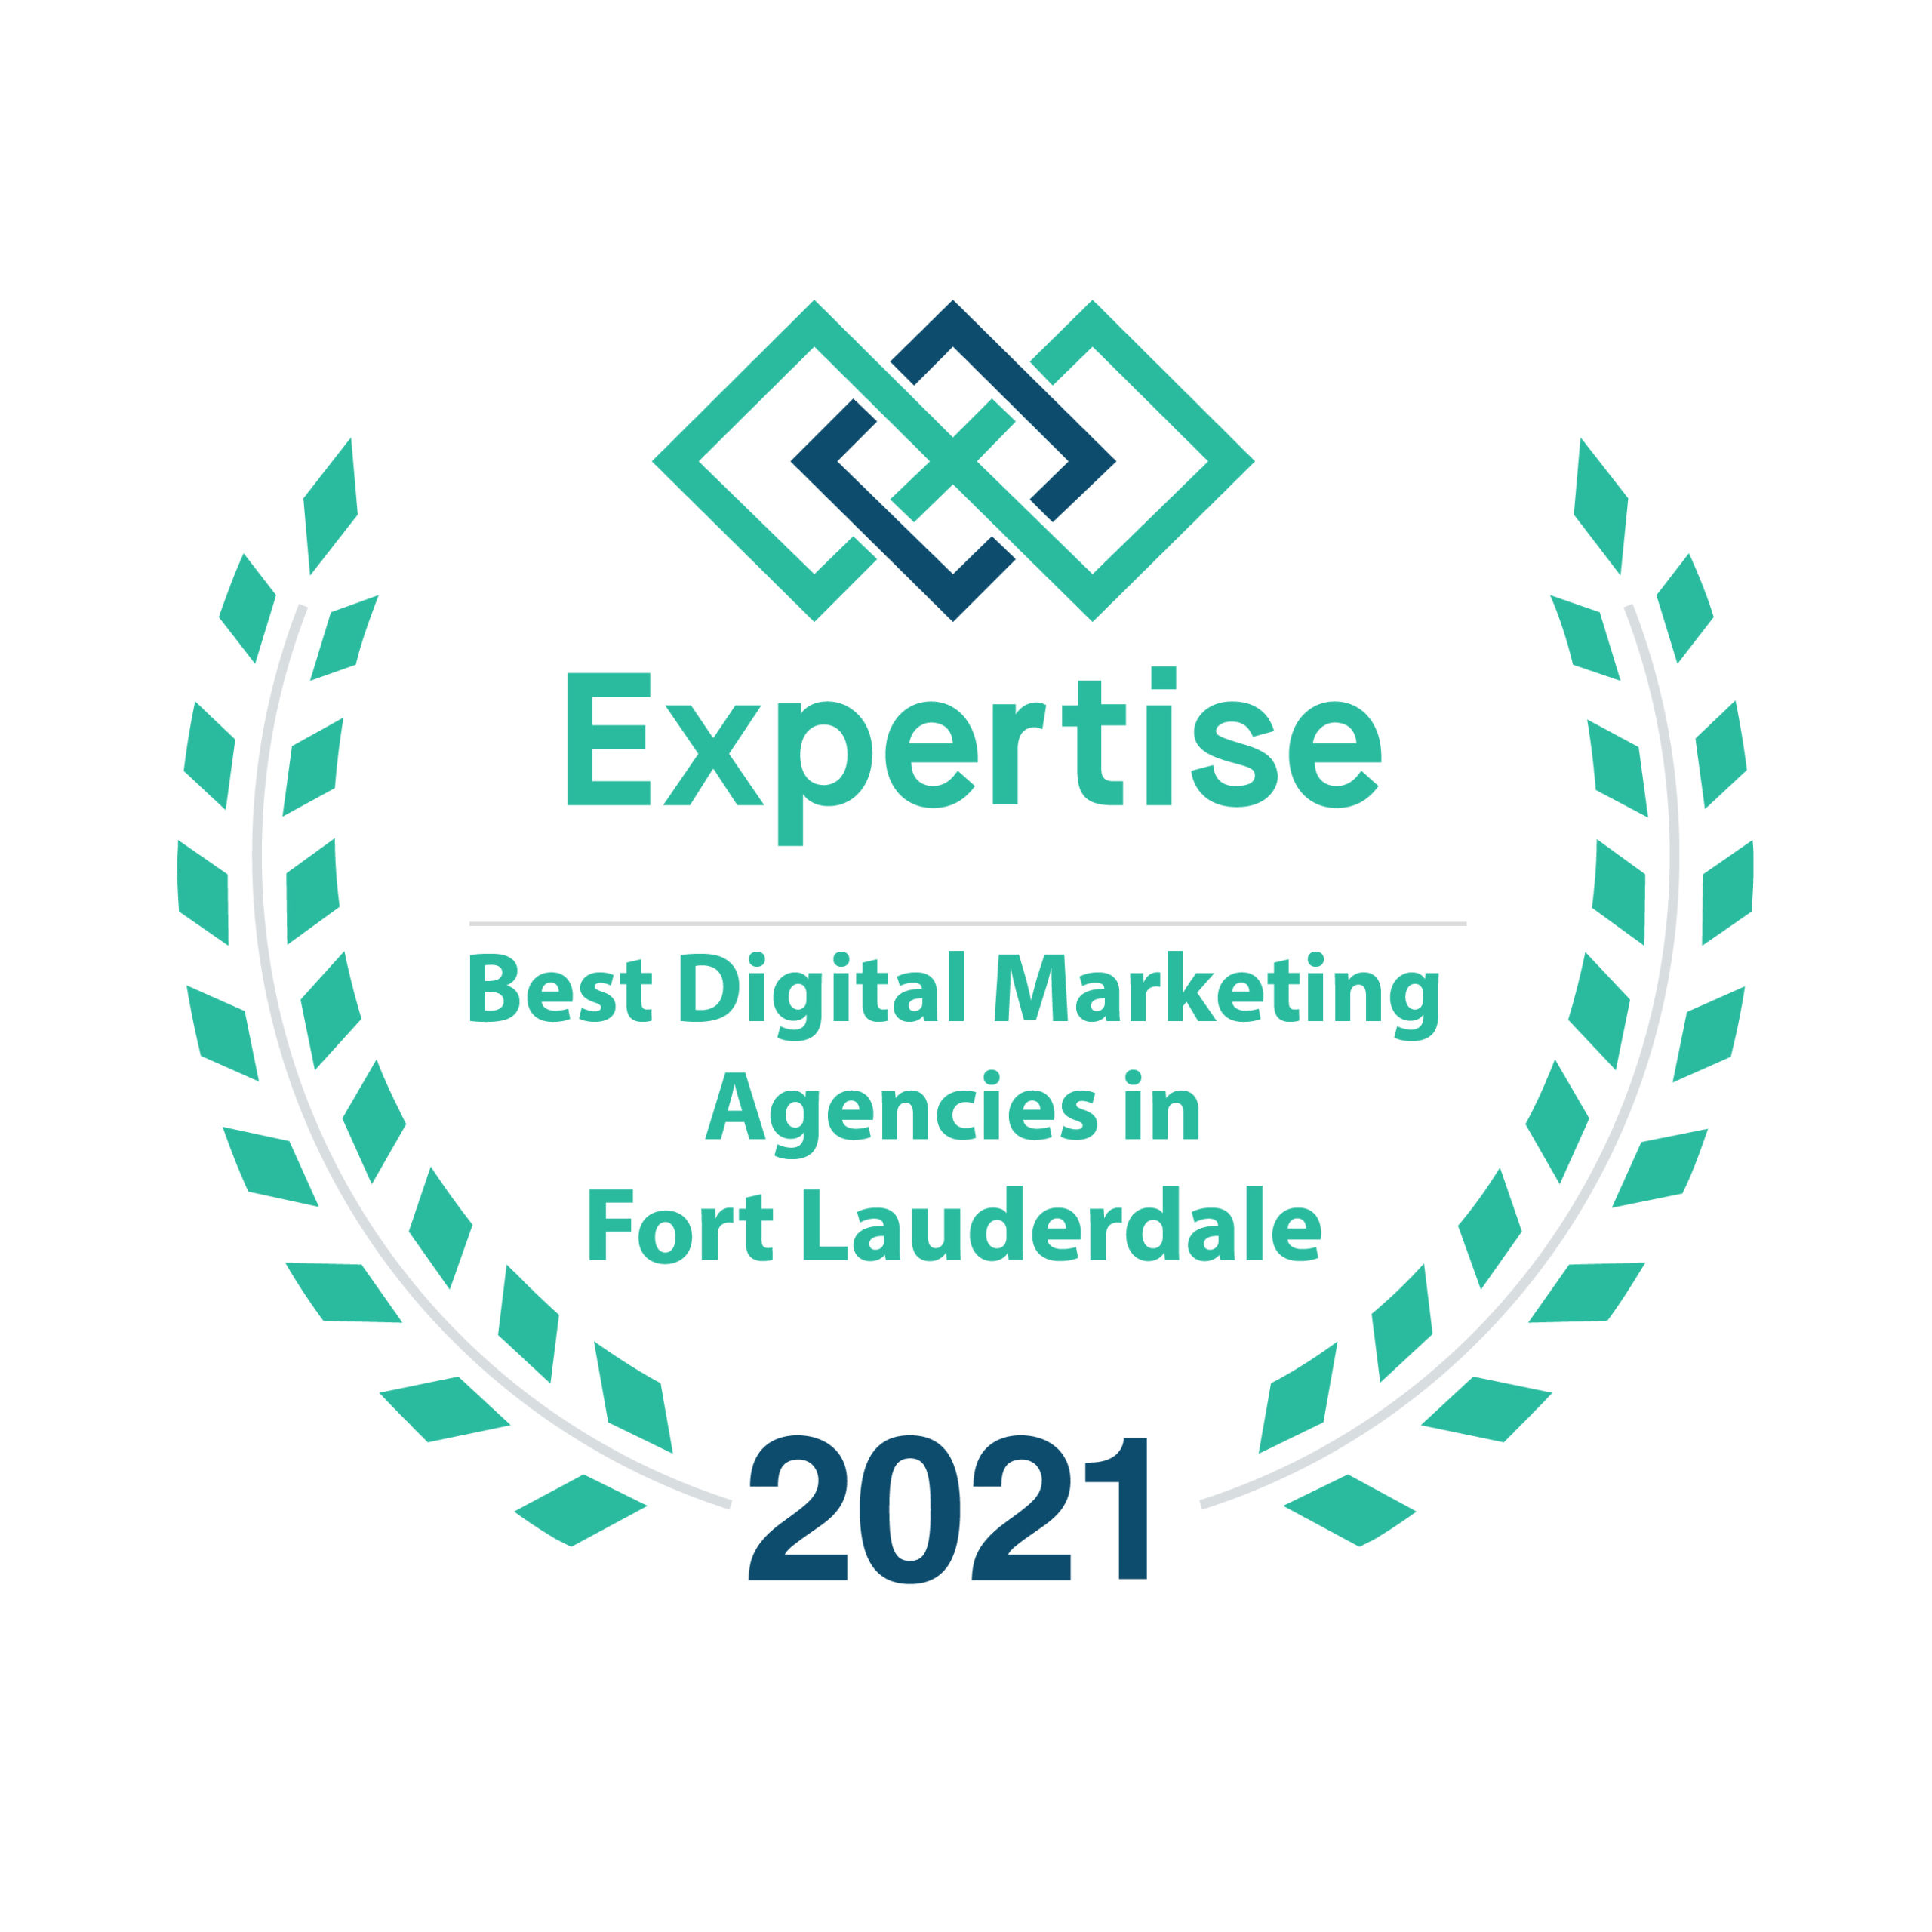 2021 Best Digital Marketing Agencies in Fort Lauderdale by Expertise